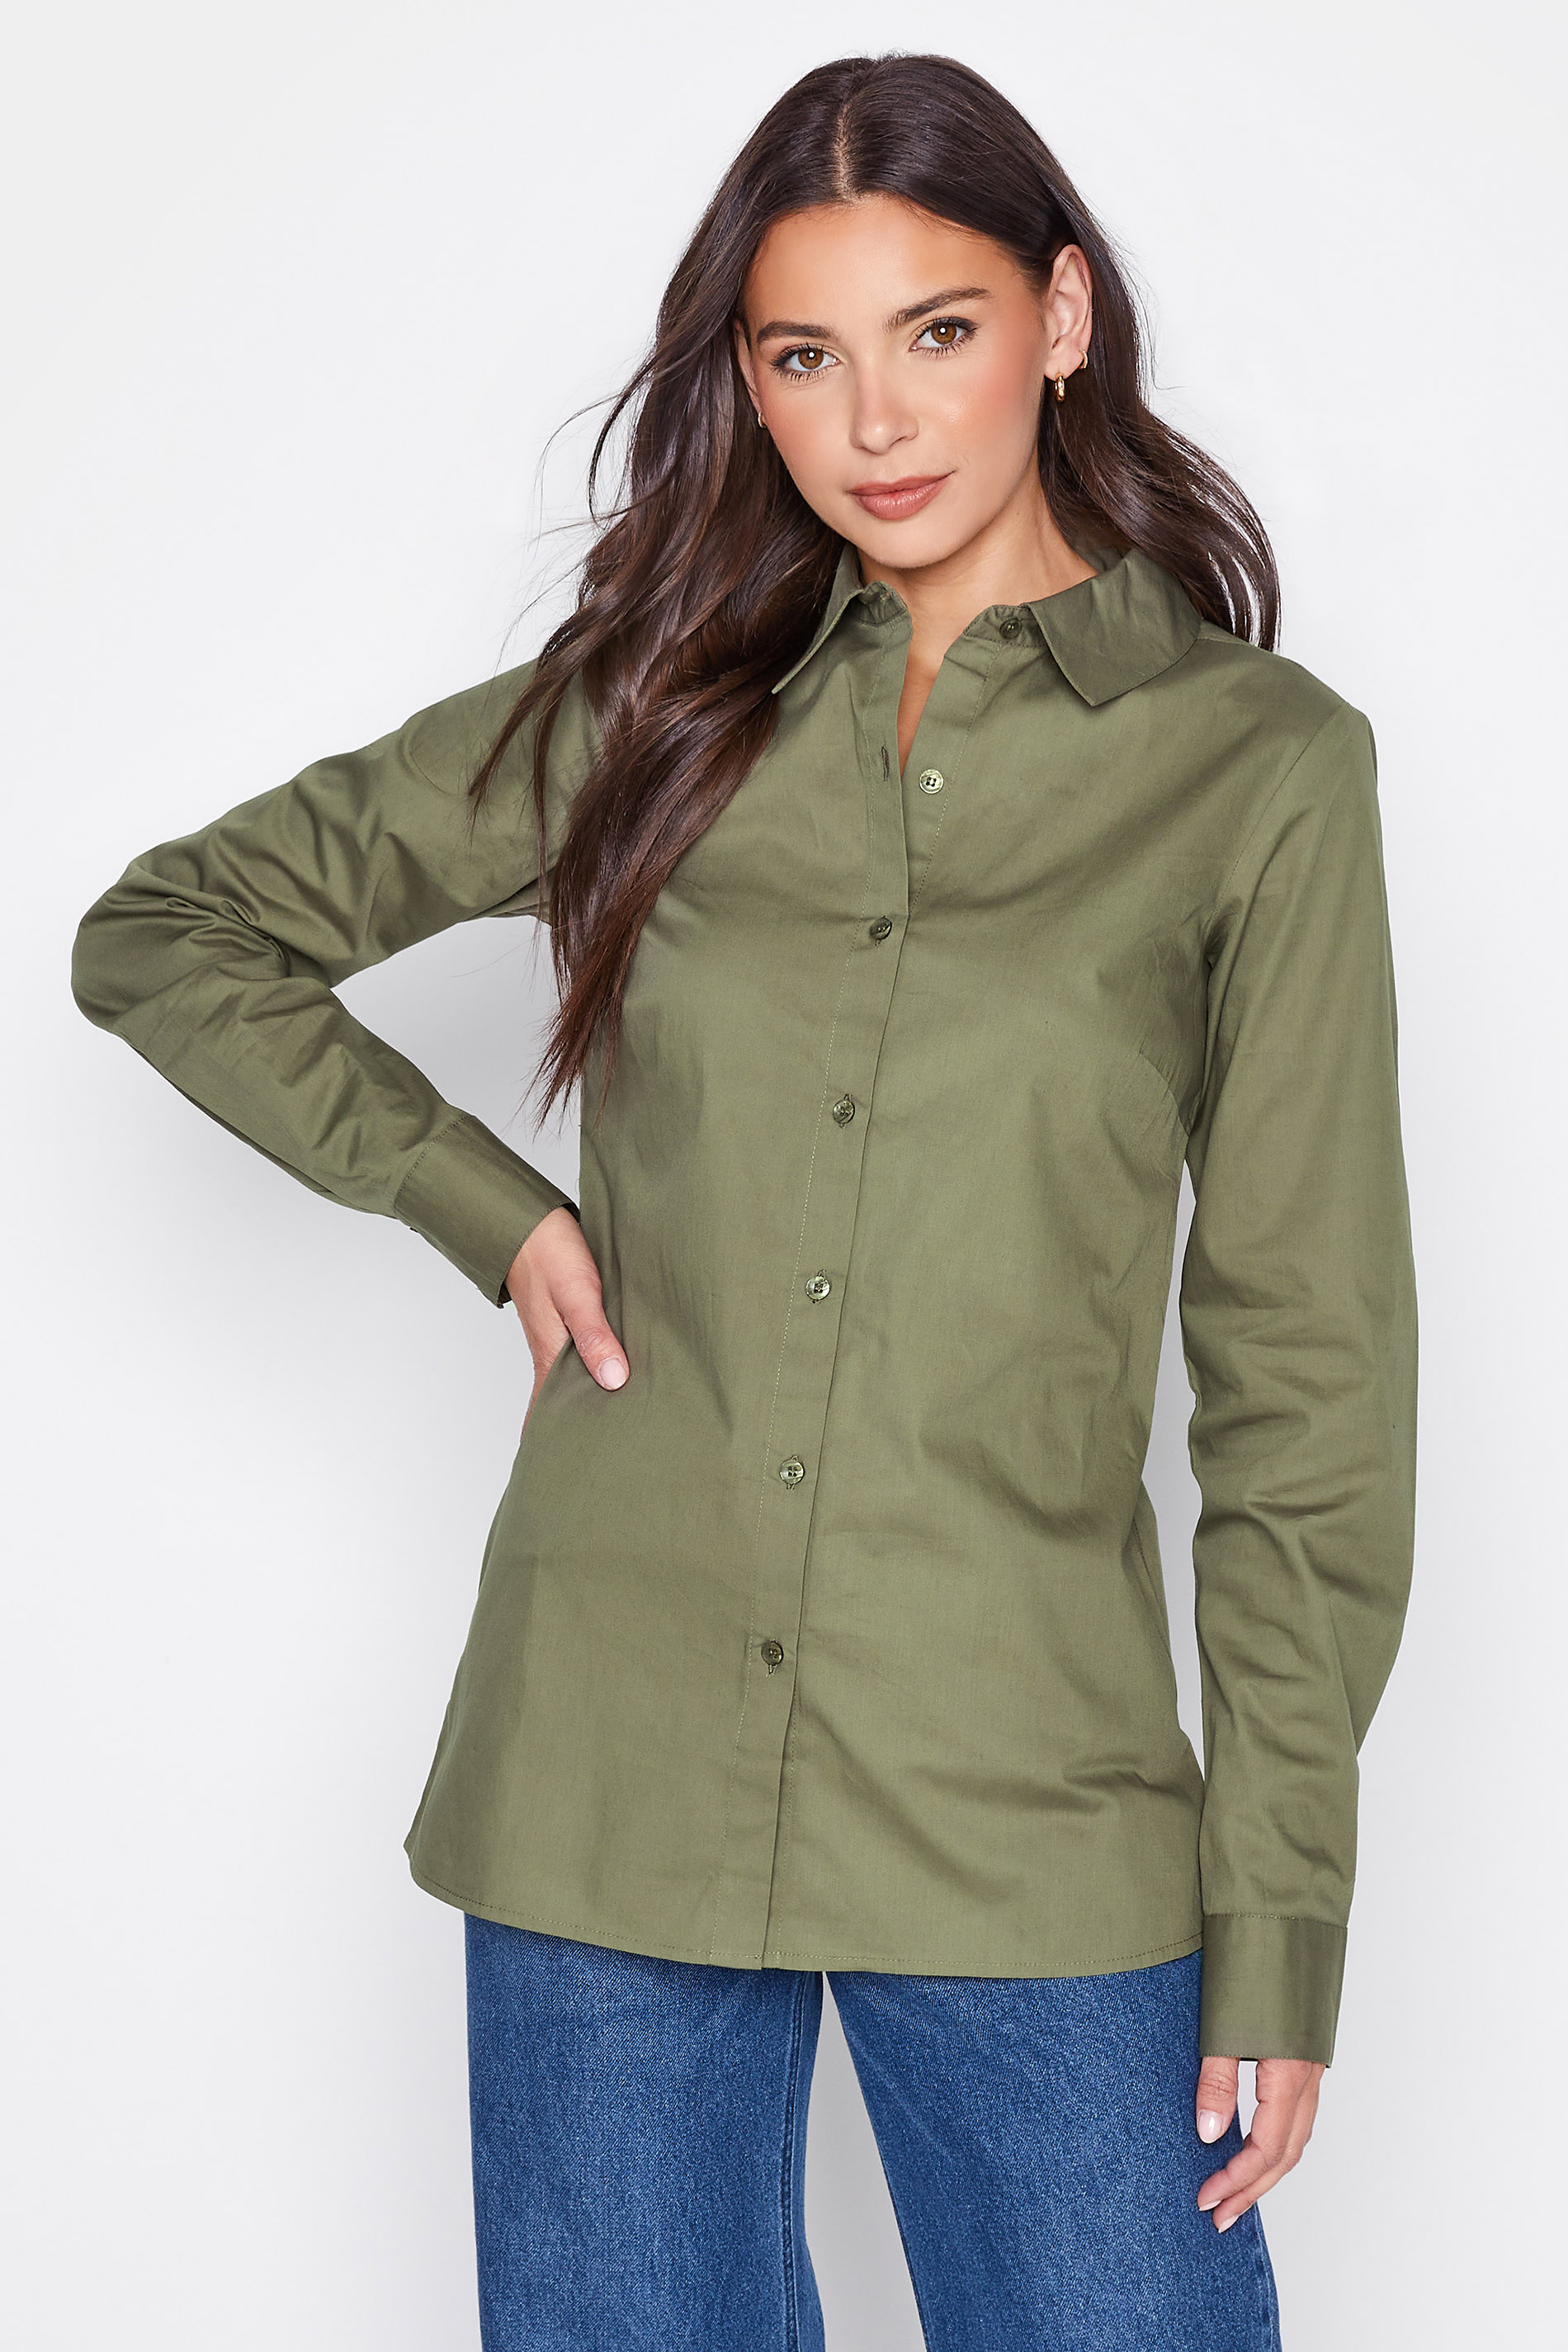 LTS Tall Women's Khaki Green Cotton Shirt | Long Tall Sally 2